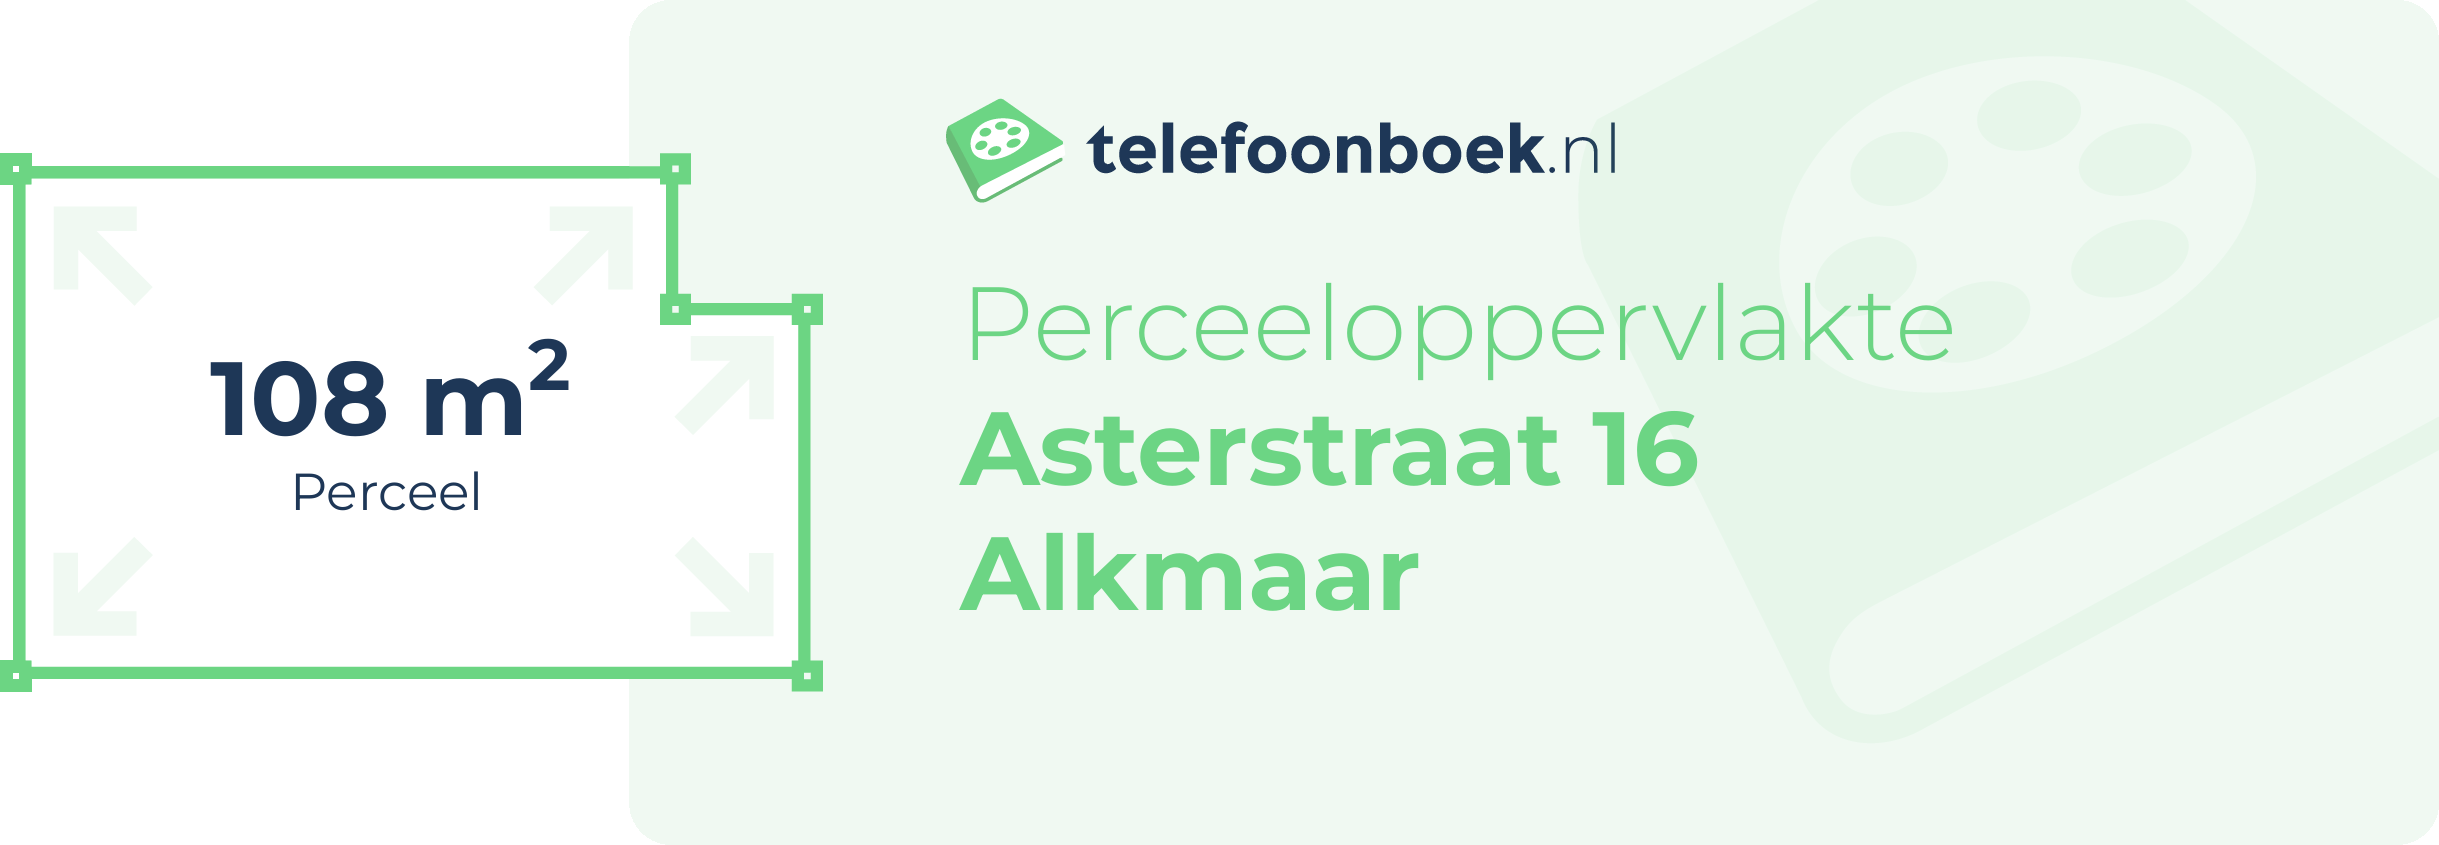 Perceeloppervlakte Asterstraat 16 Alkmaar